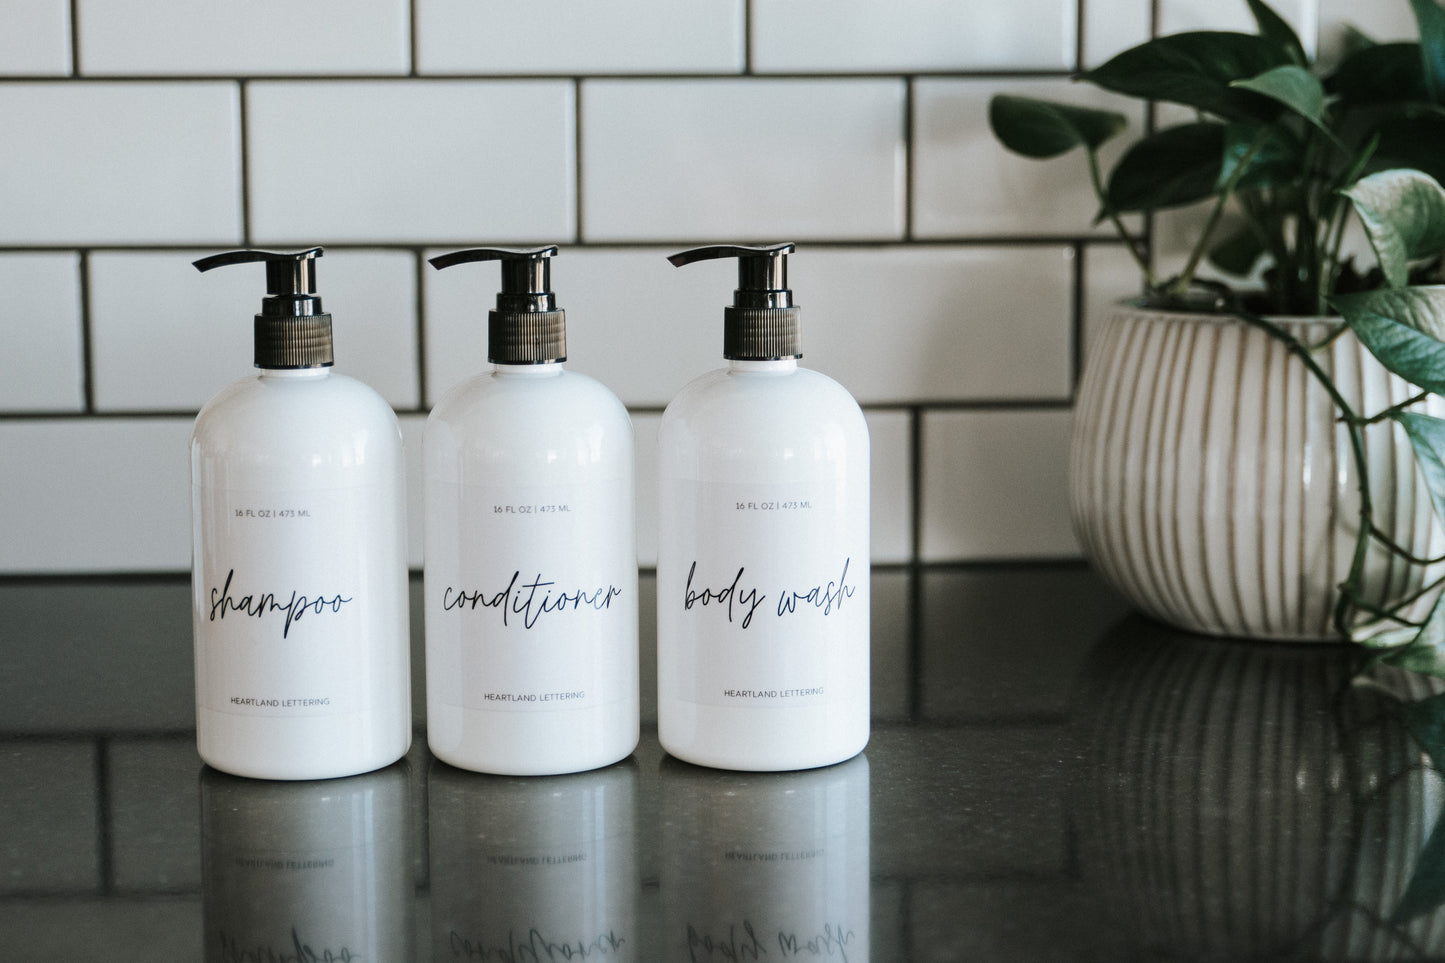 White Shampoo, Conditioner, Body Wash Sets | Script Label